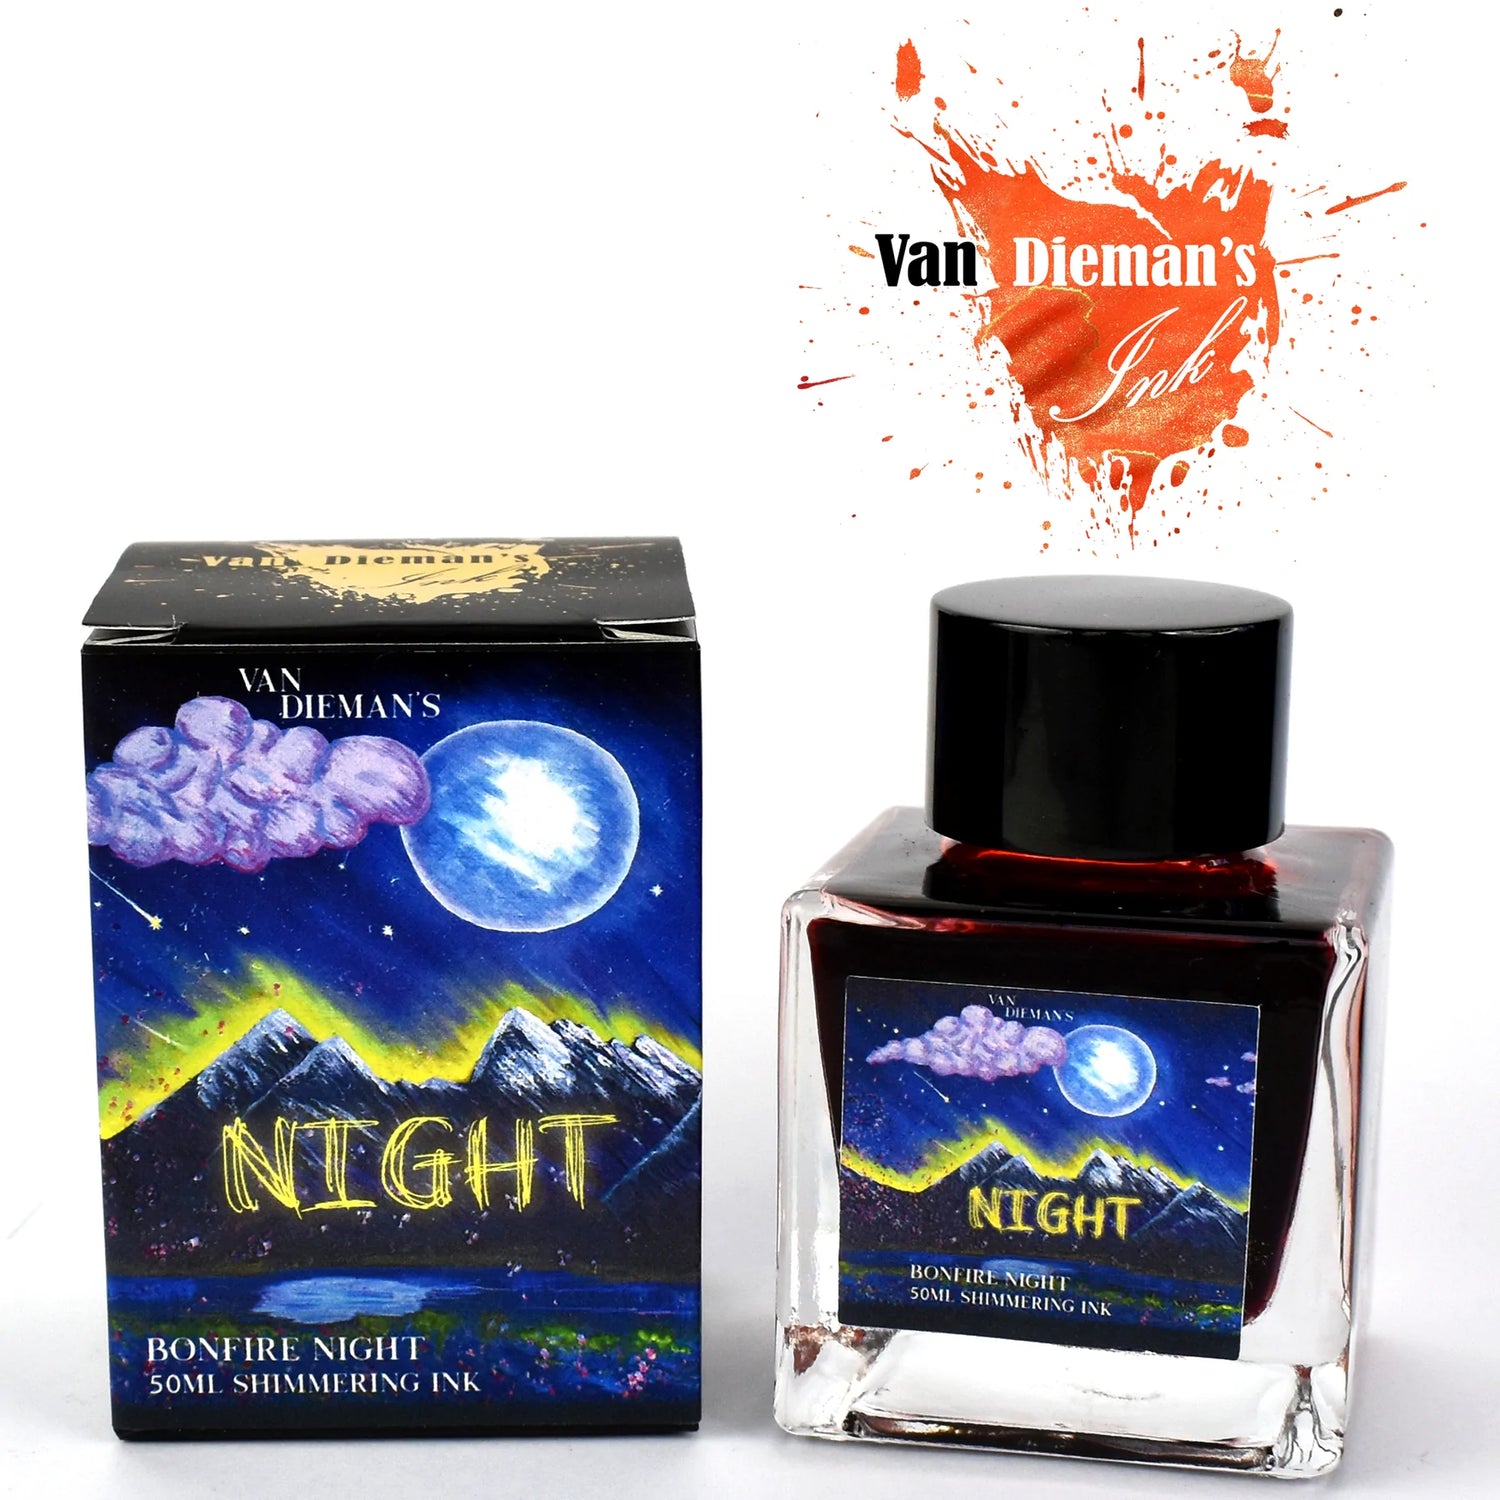 Van Dieman's Ink - The Night Series